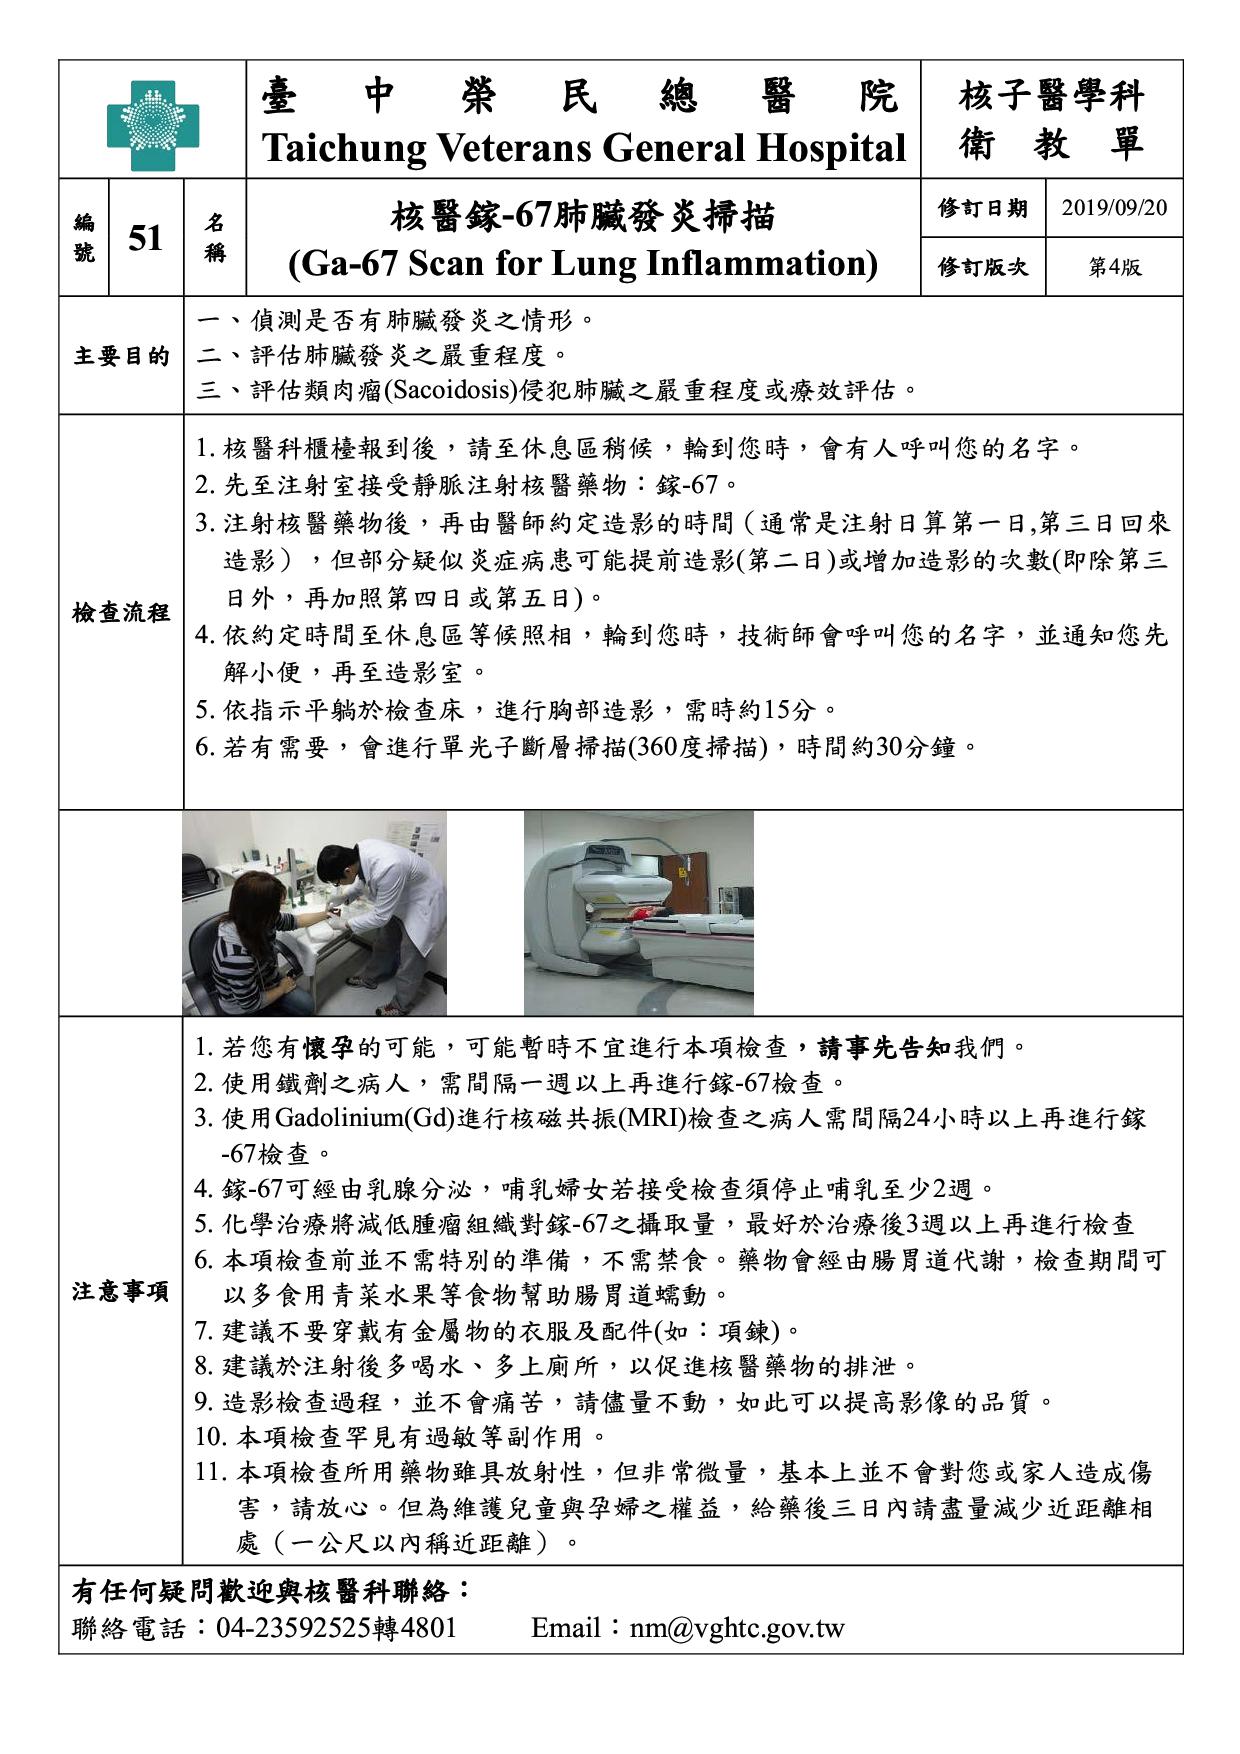 衛-51-核醫鎵-67肺臟發炎掃描(4)(20190920)